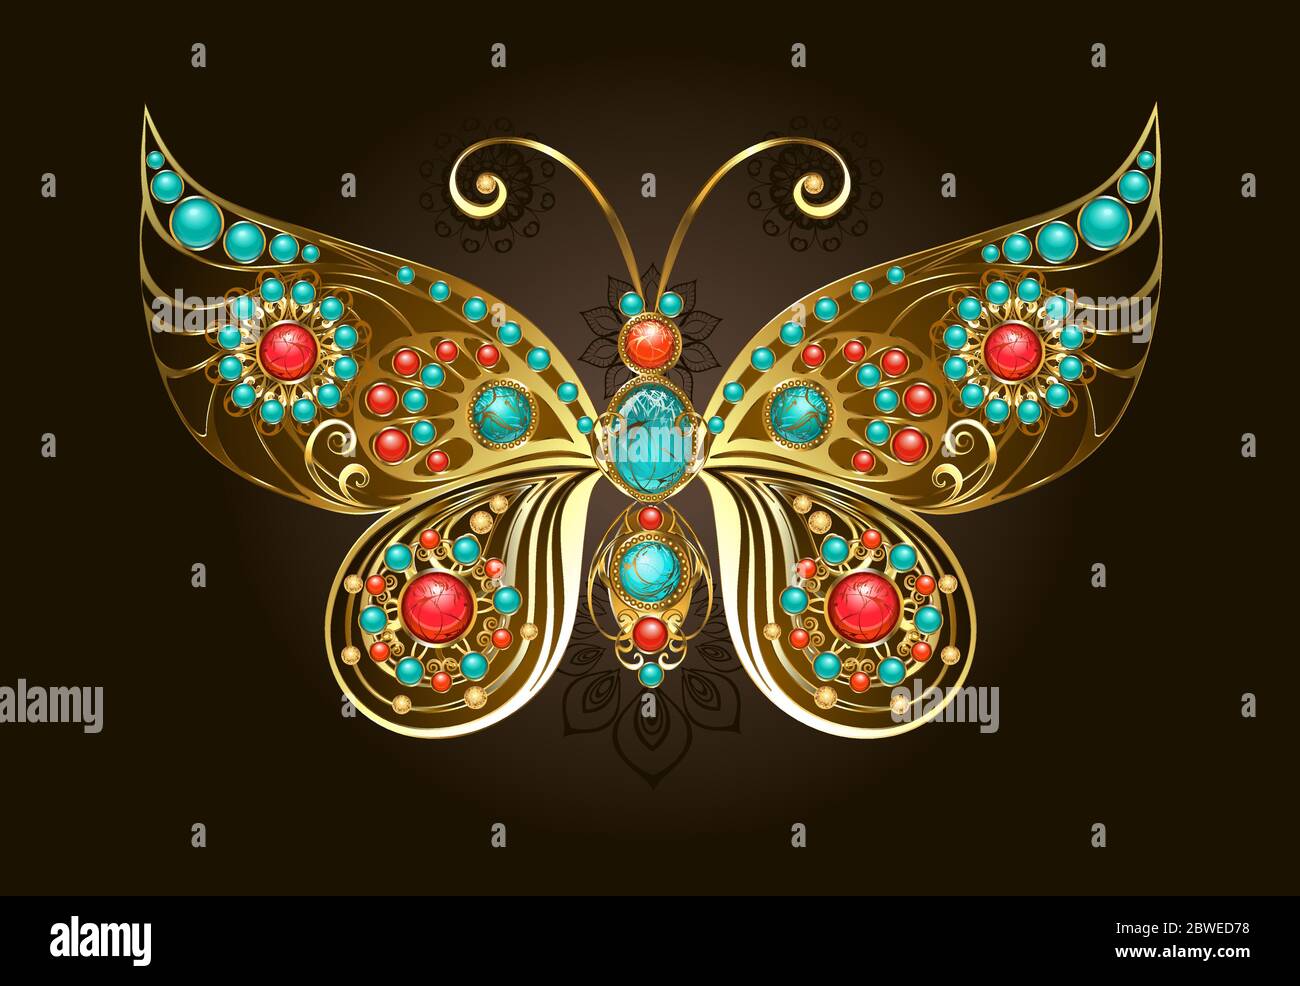 Broche de latón en forma de mariposa estampada, decorada con turquesa, jaspe y carneliano, hecha en estilo étnico. Estilo boho. Ilustración del Vector